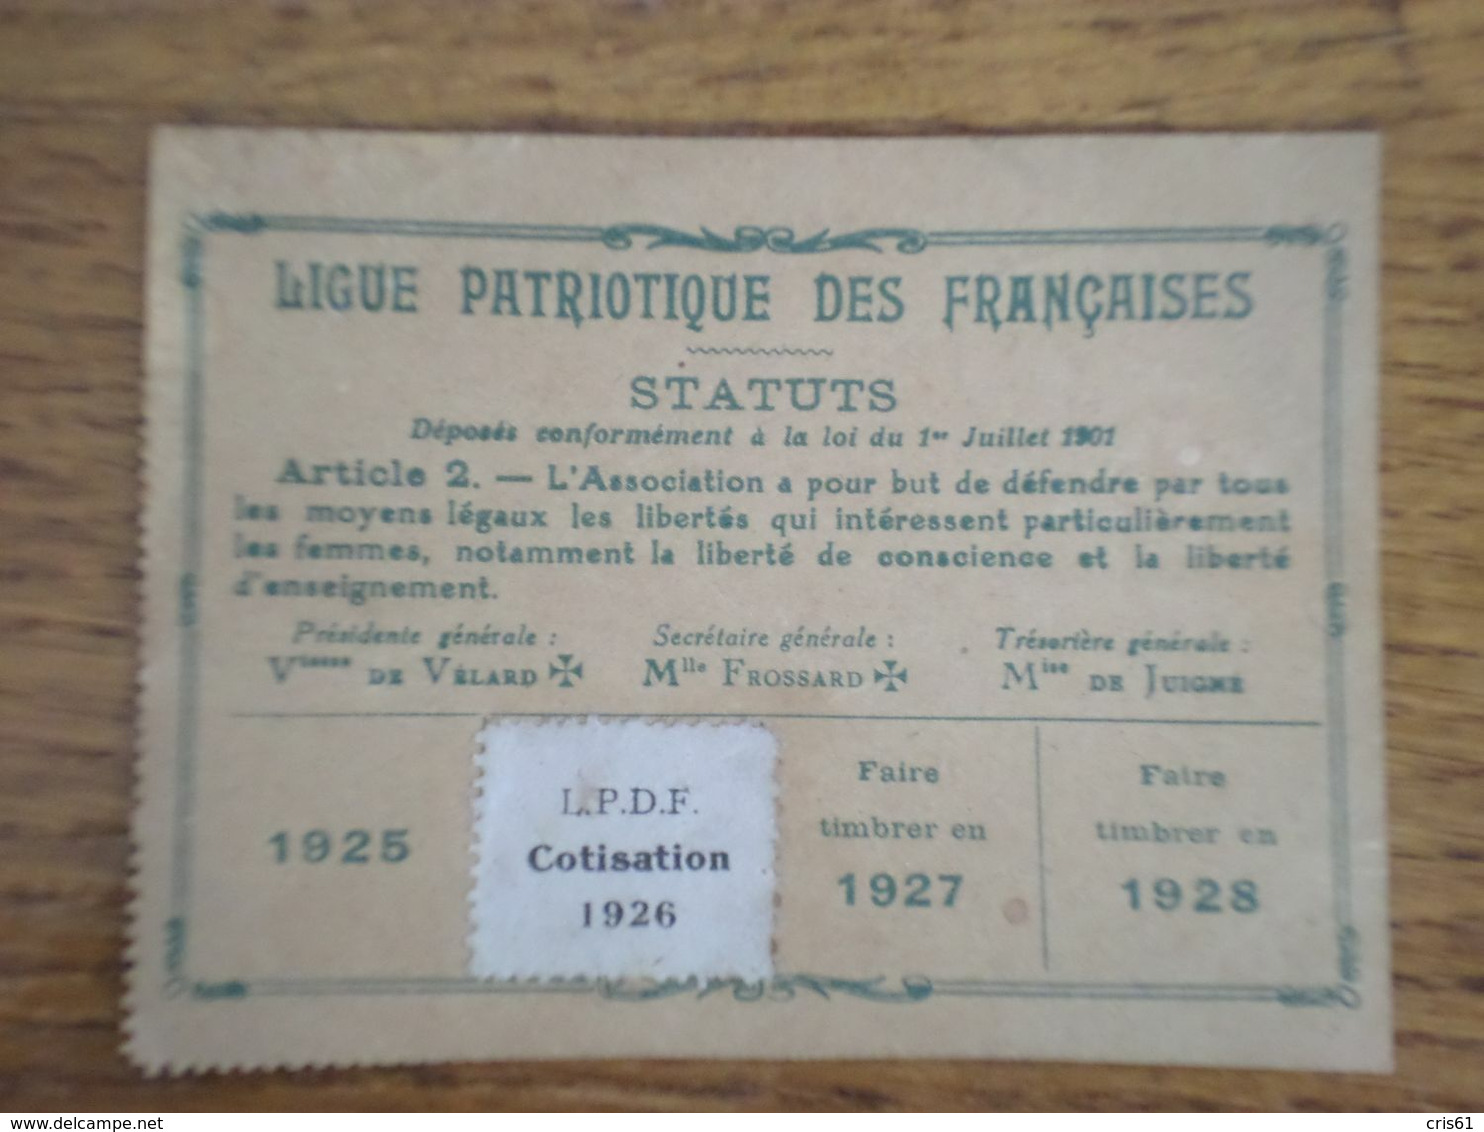 Carte D'adhésion à La Ligue Patriotique Des Françaises Du Comité De Brunoy, Avec étiquette De Cotisation Pour 1926 - Documents Historiques